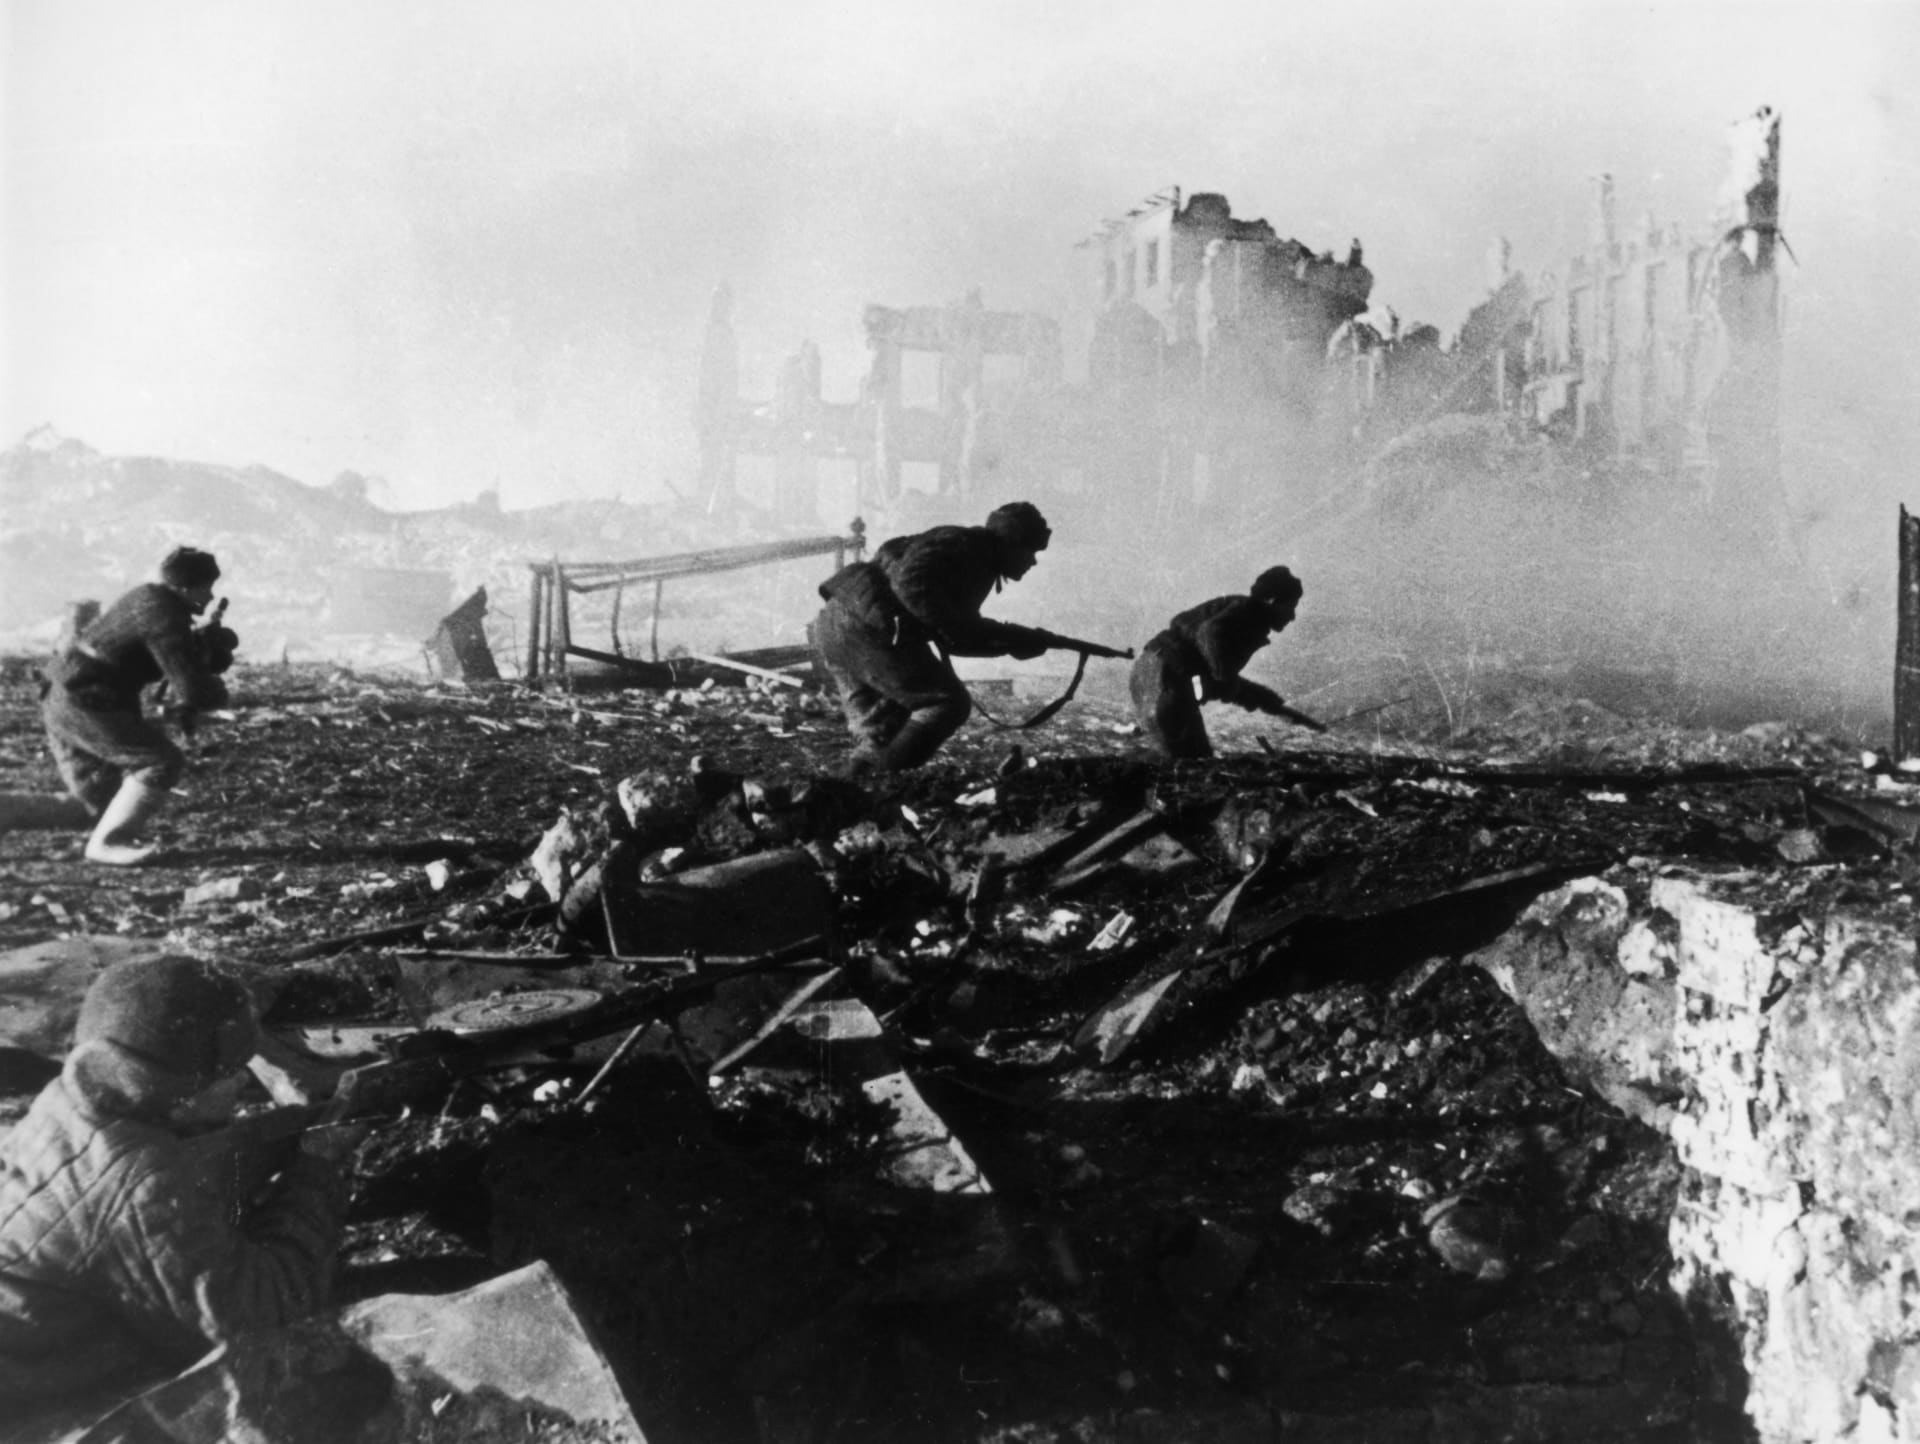 Bitva u Stalingradu byla jedním z největších a nejkrvavějších vojenských střetnutí druhé světové války.